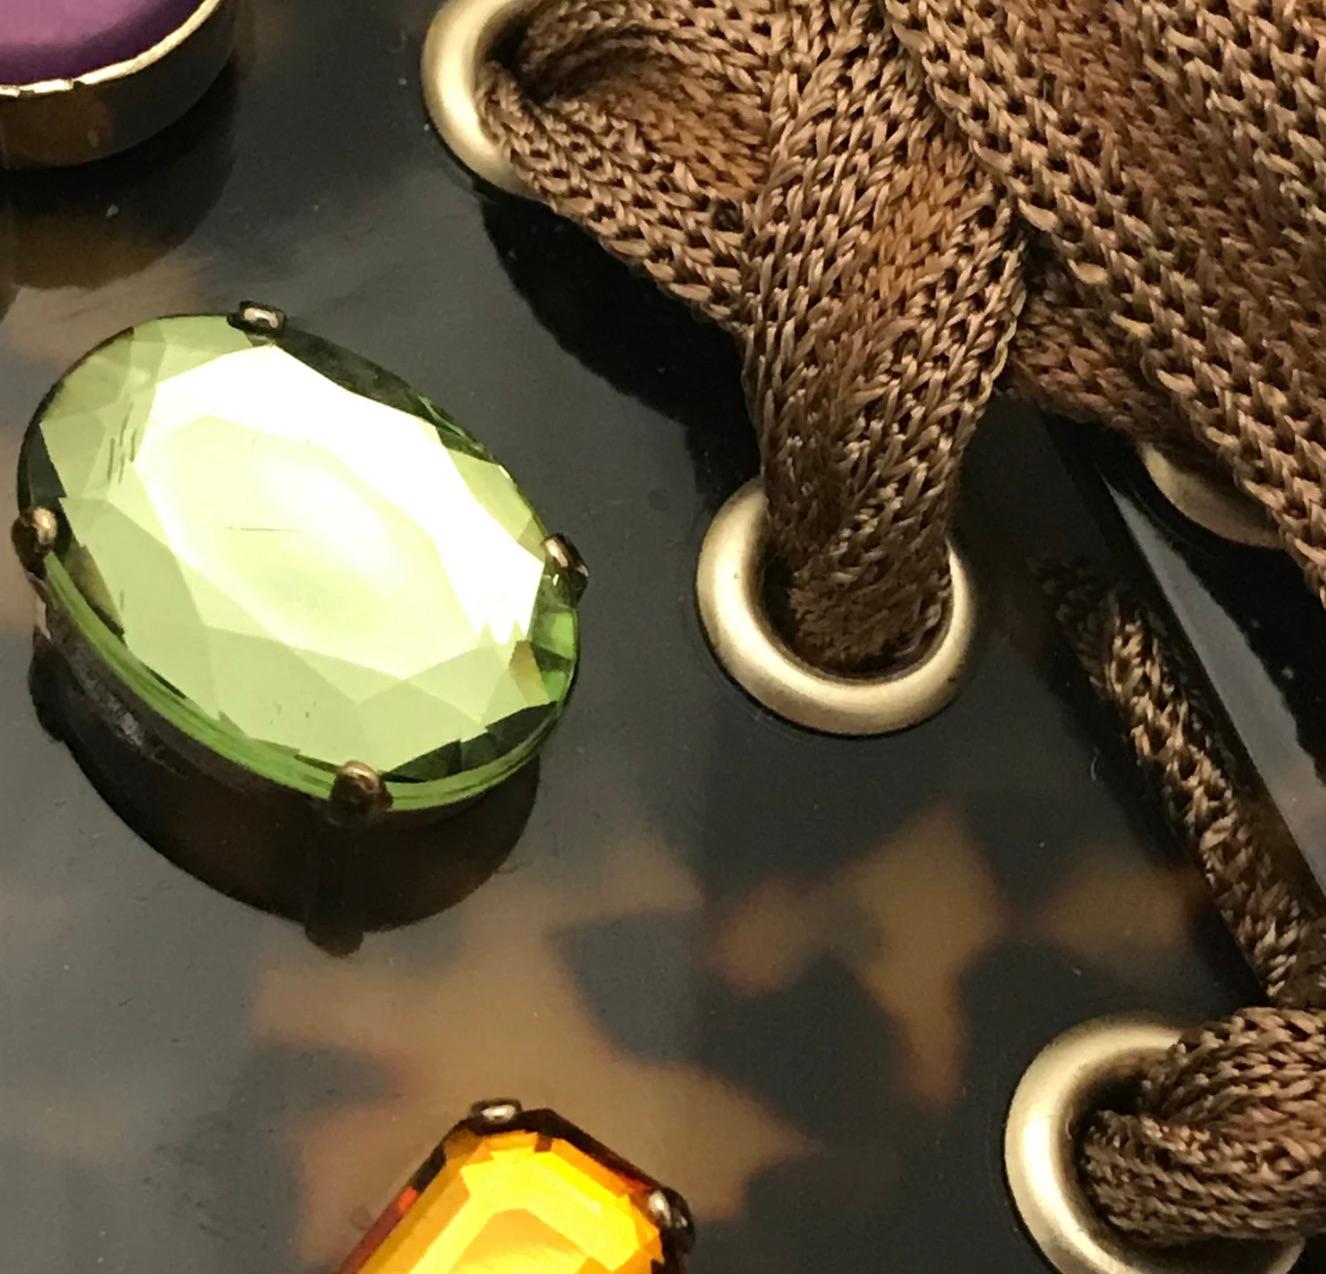 Edelsteinbesetzte Halskette im Vintage-Look von Missoni. Halsband aus Schildpatt-Harz in Braun- und Bernsteintönen, verziert mit rosa, grünen, lilafarbenen und orangefarbenen Edelsteinen in einem goldfarbenen Metallgehäuse. Alle Edelsteine sind